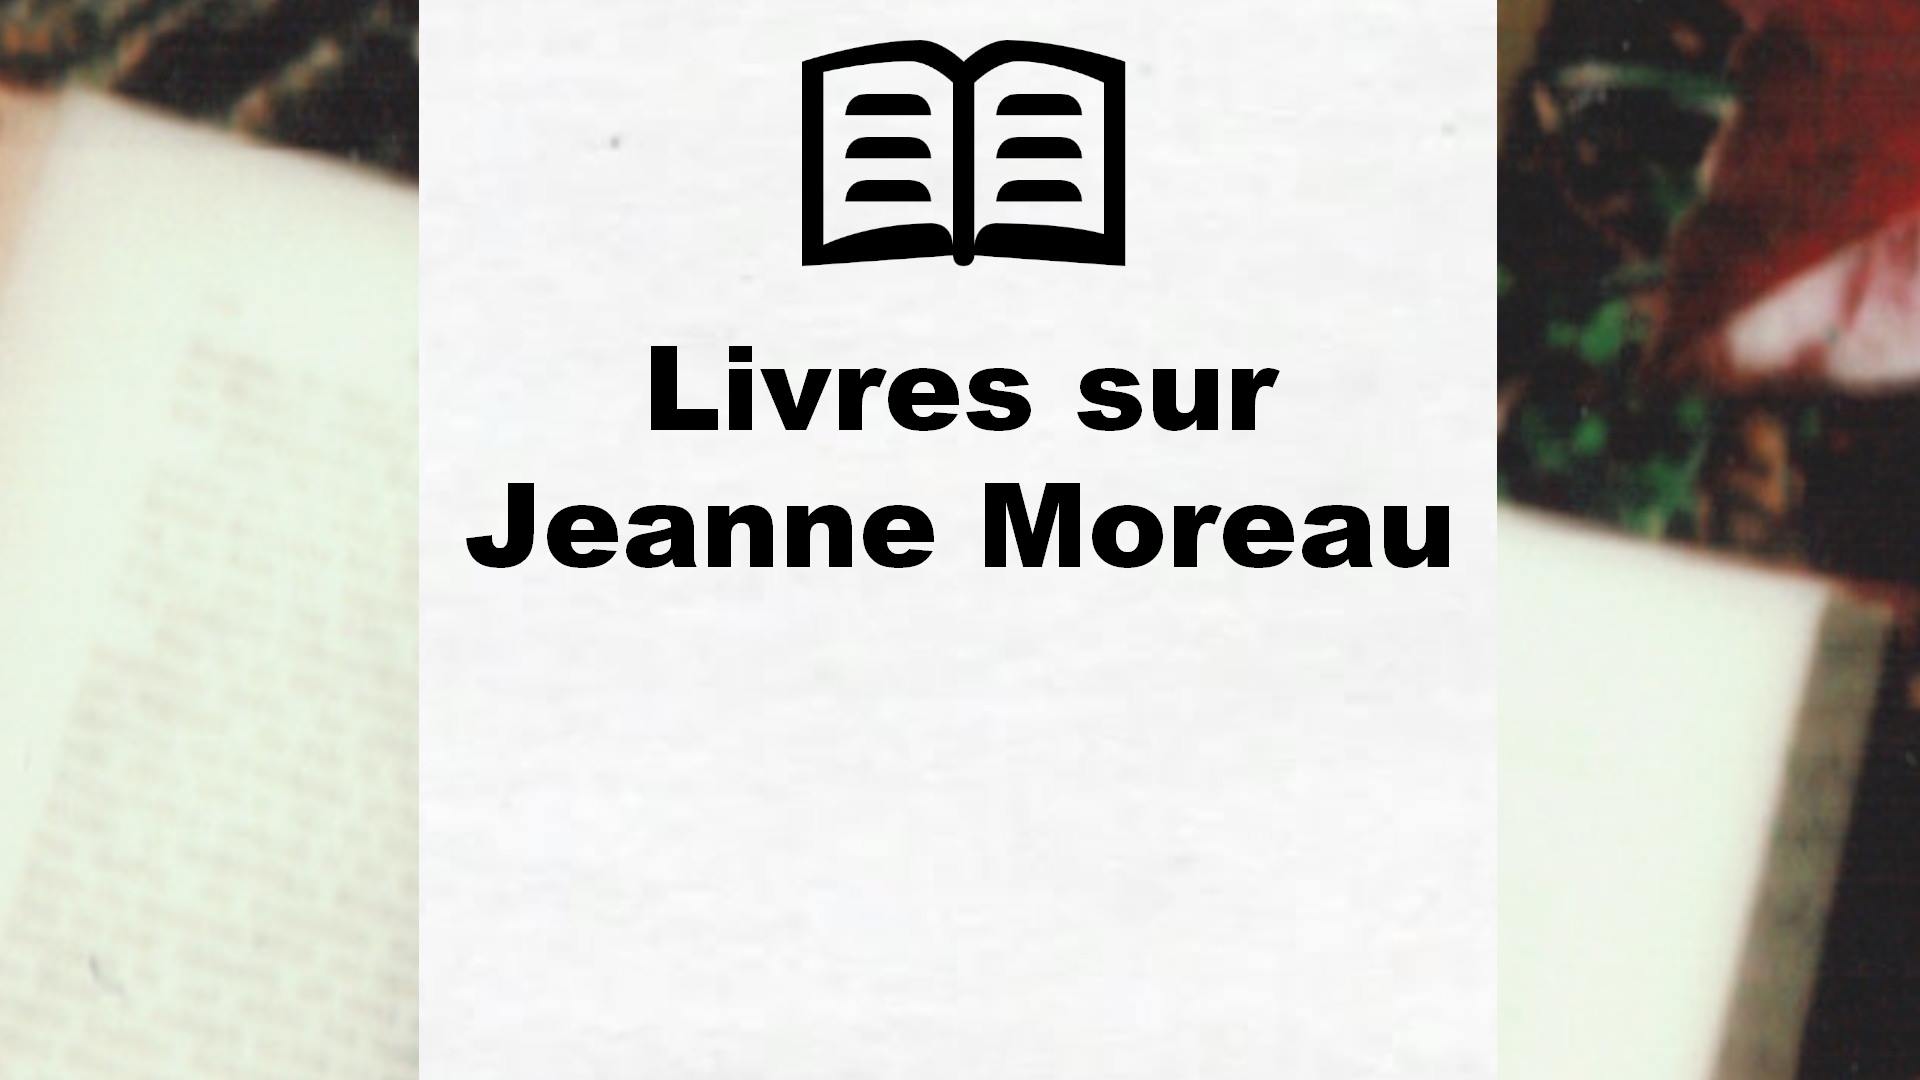 Livres sur Jeanne Moreau